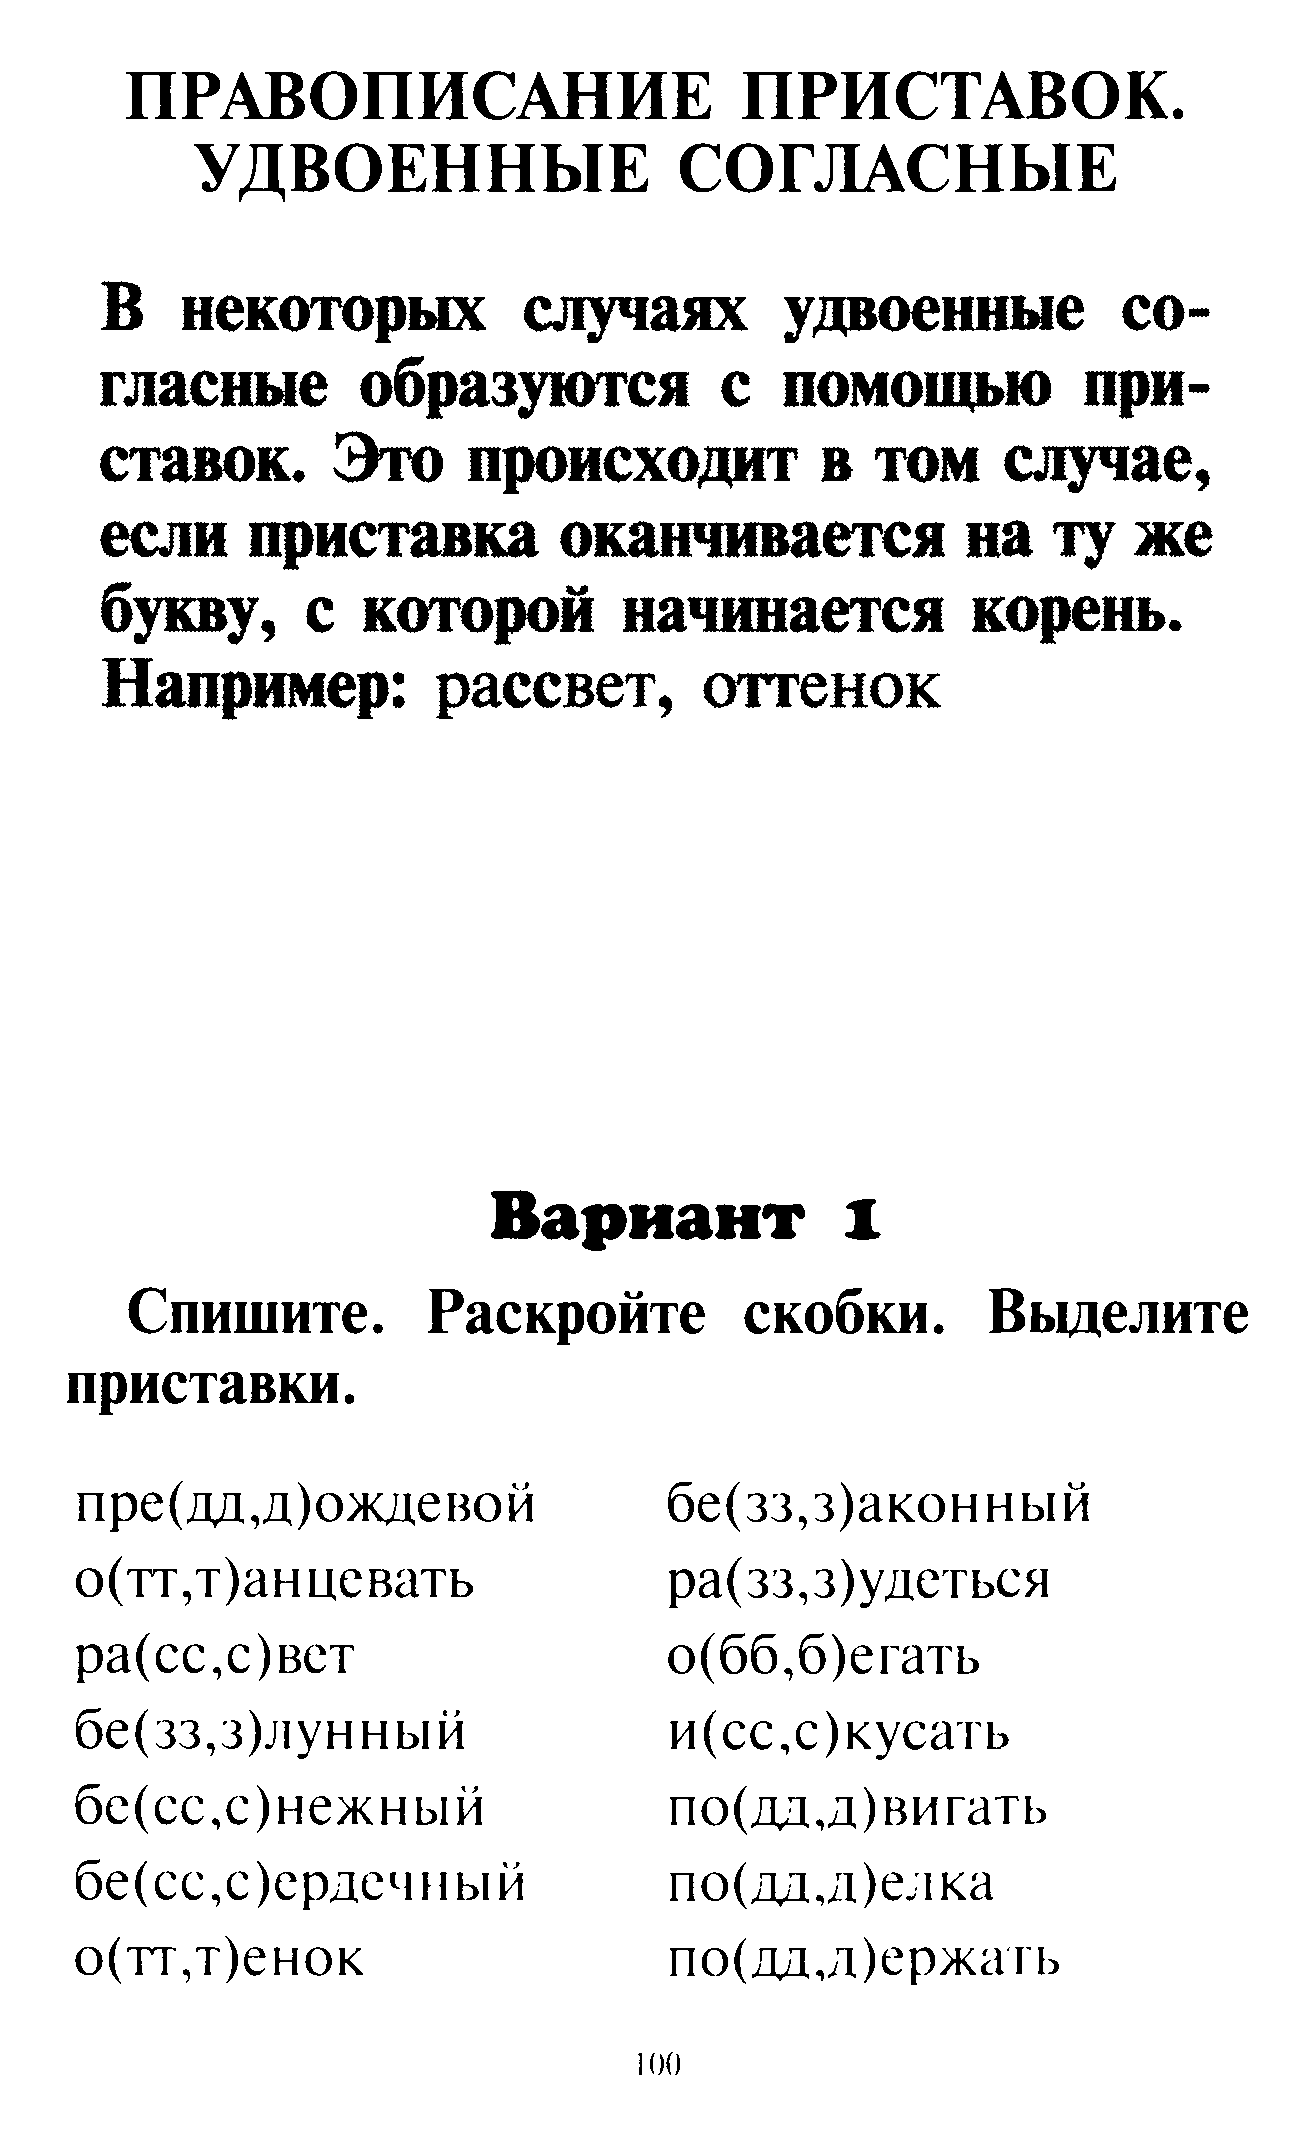 Правила и упражнения по русскому языку